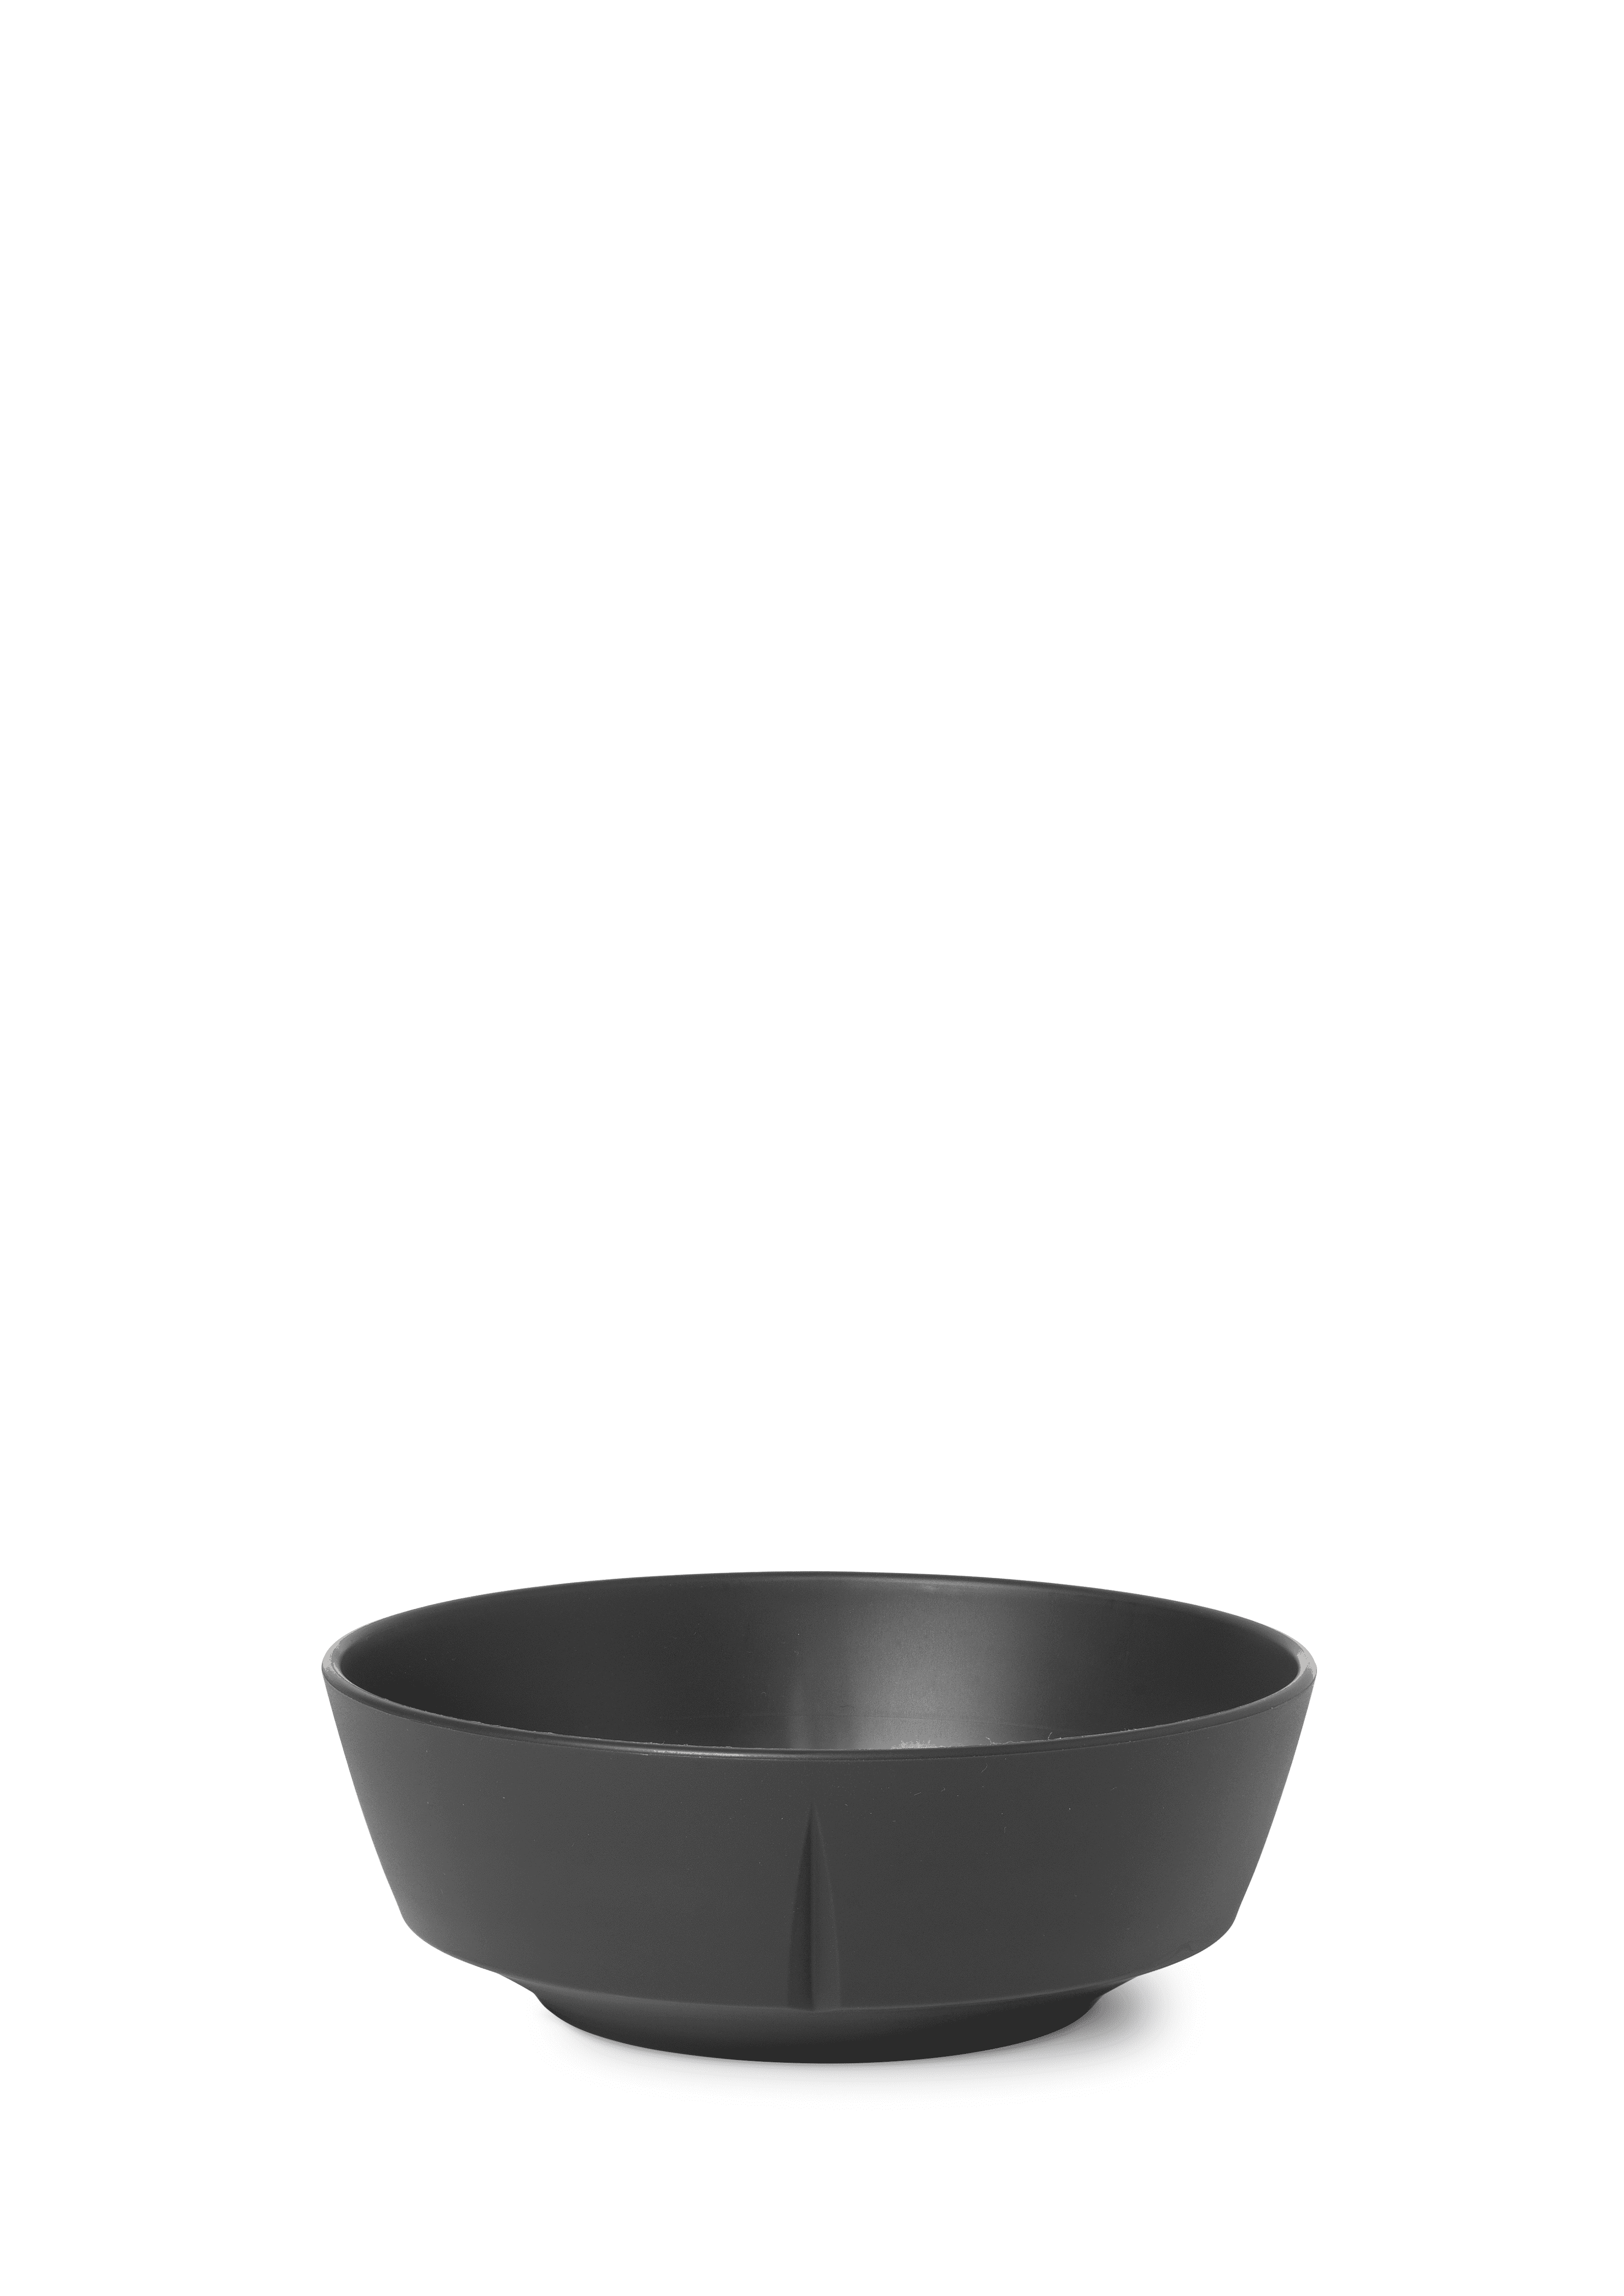 Bowl Ø15.5 cm 2 pcs.